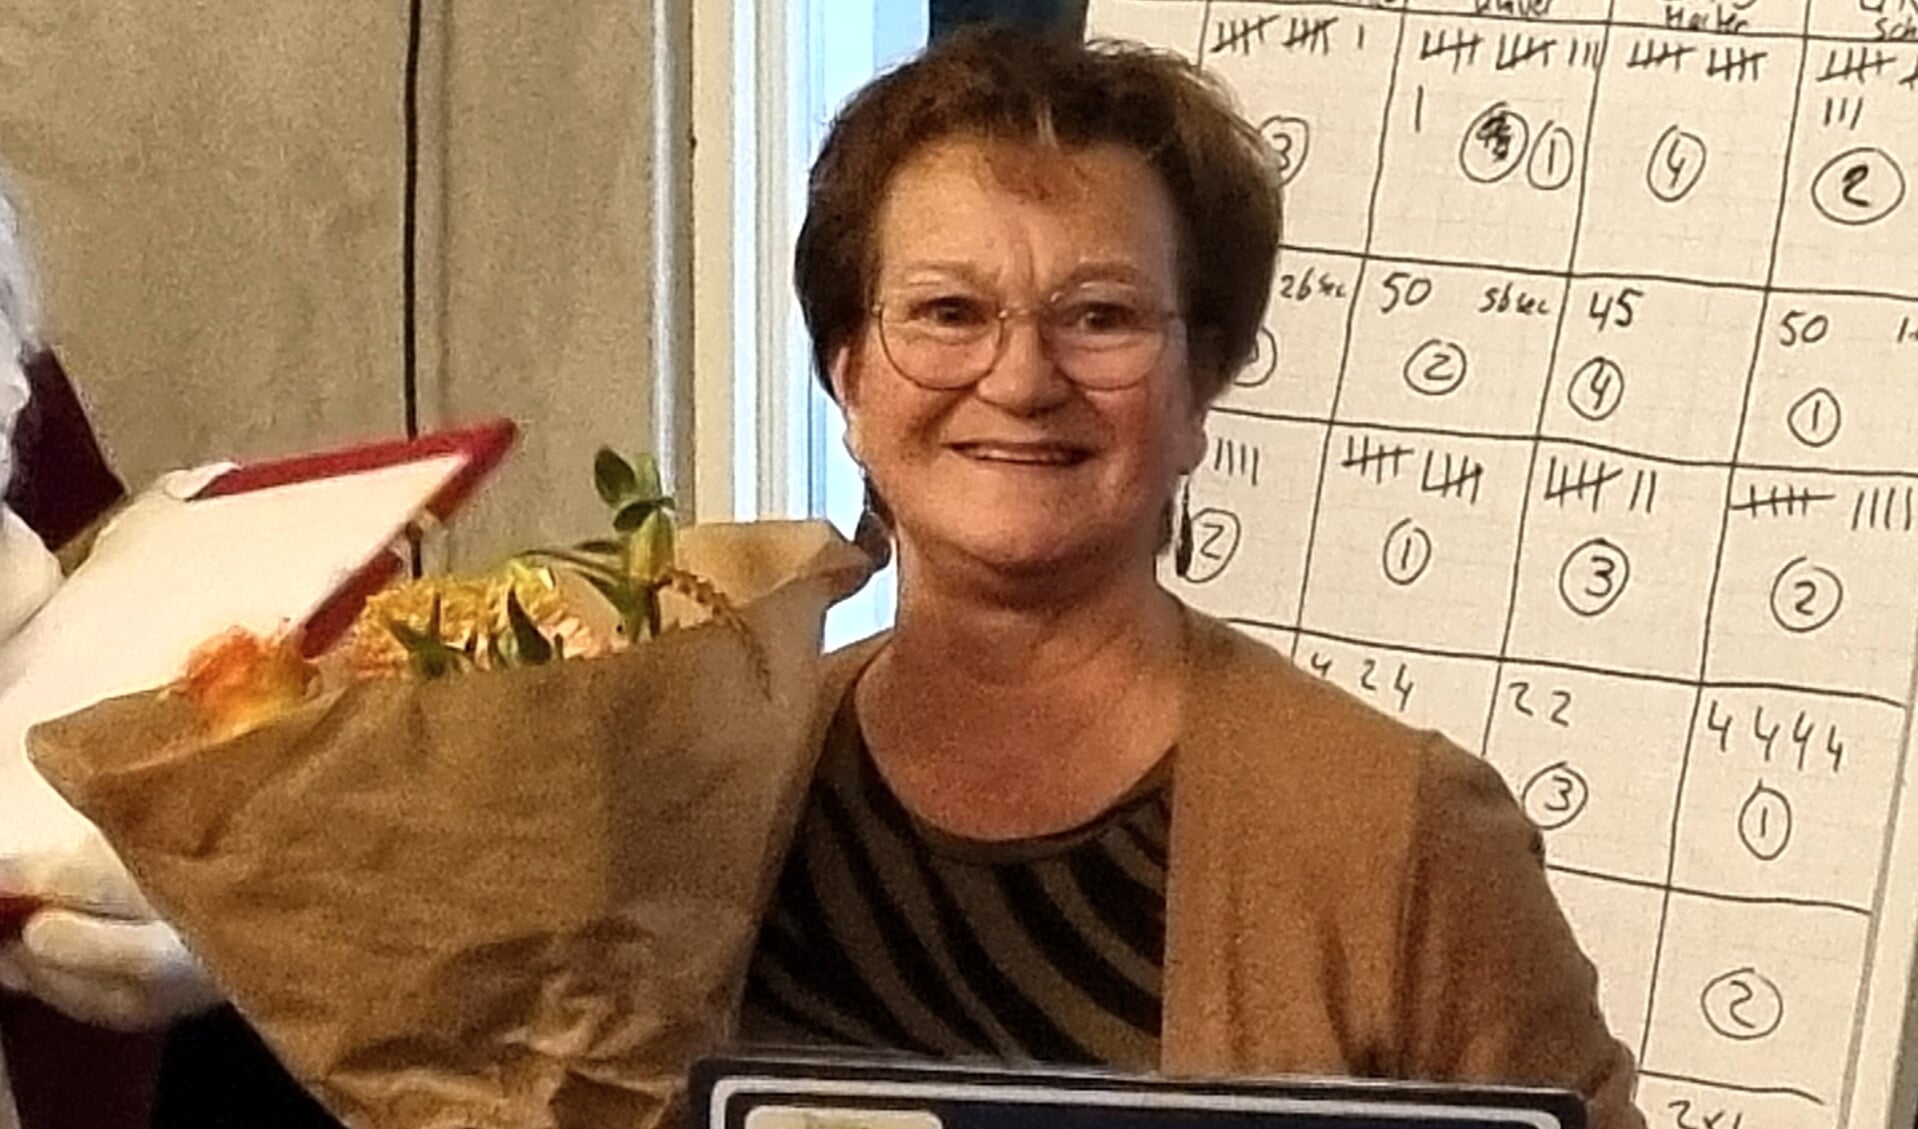 Penningmeester Betty Hogenelst legt na 35 jaar haar functie neer en wordt benoemd tot erelid van corsogroep Teeuws. Foto: PR